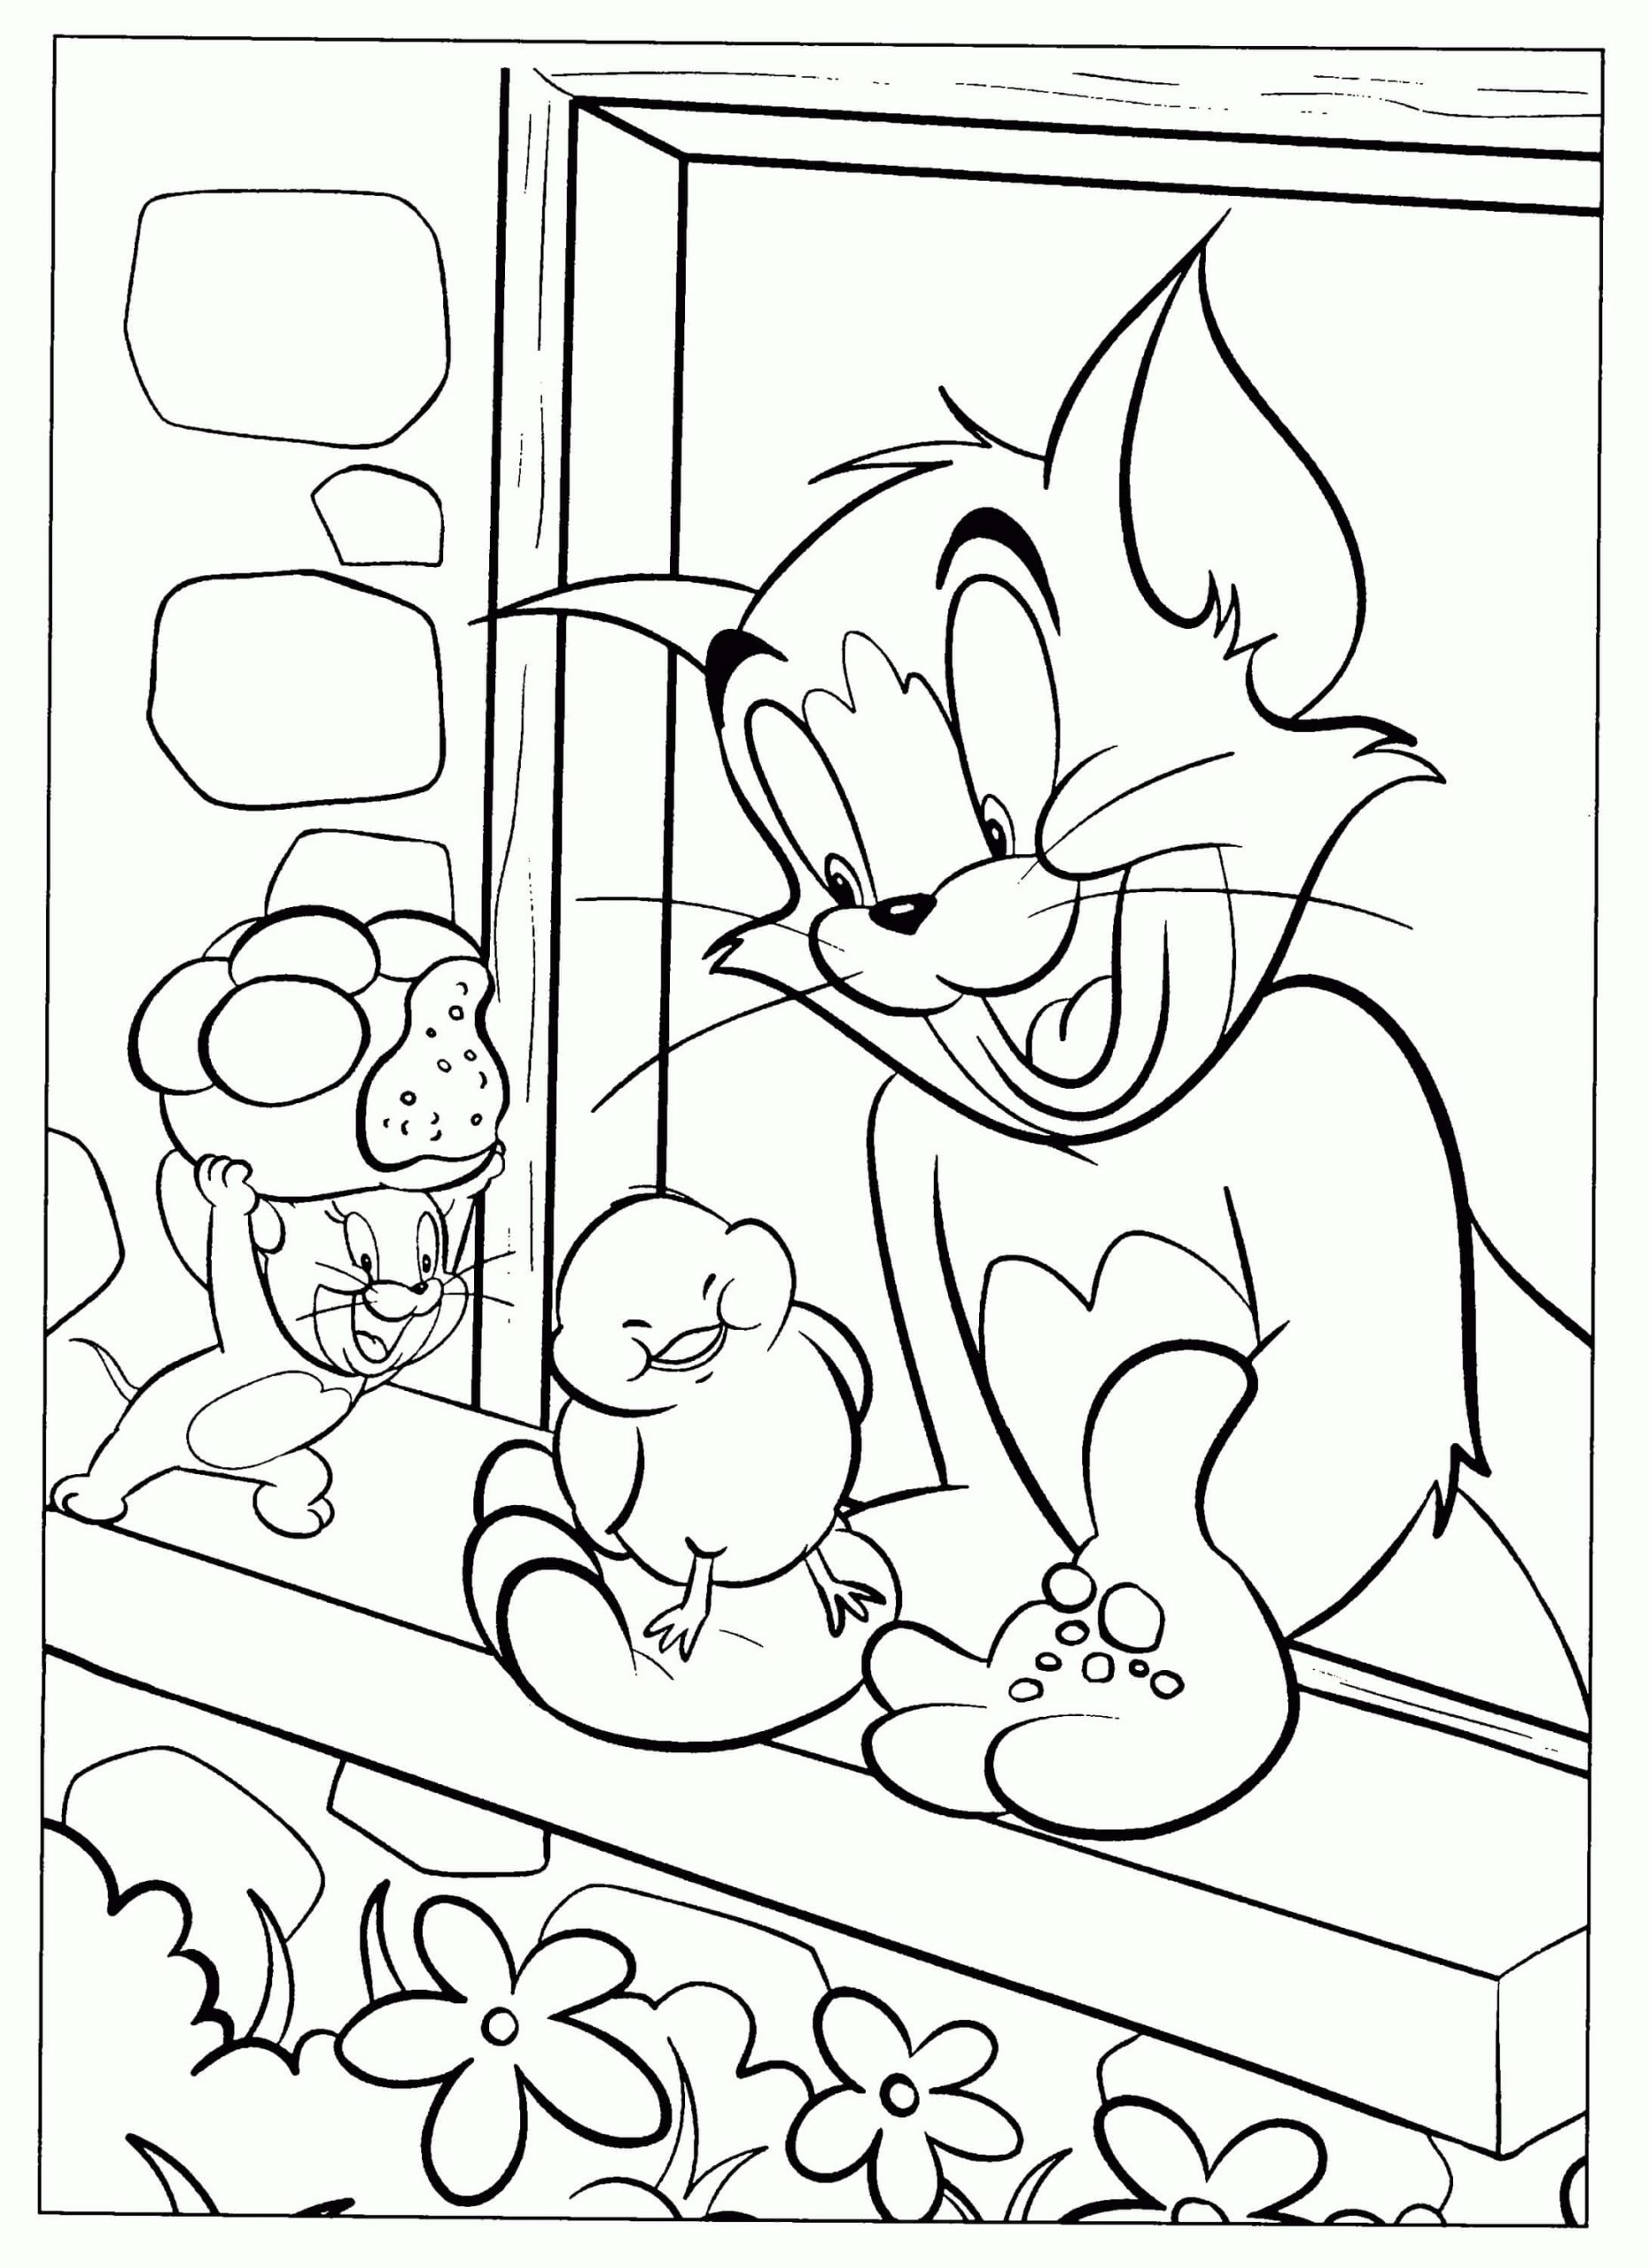 Tom e Jerry com Pato para colorir